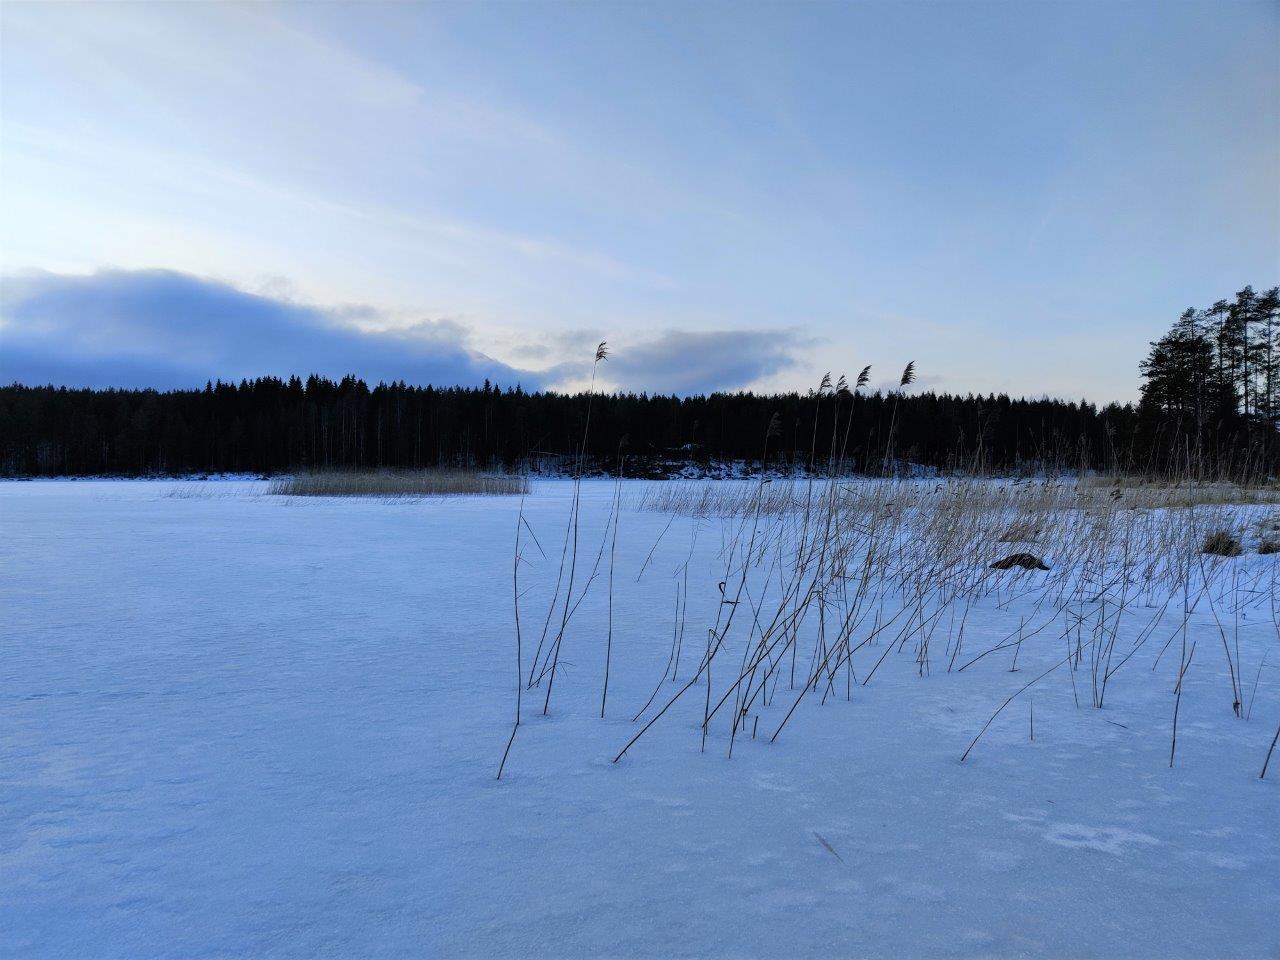 Jäätynyt järven selkä tontilta katsottuna, kaislikkoa ja kiviä pilkistää jään alta.